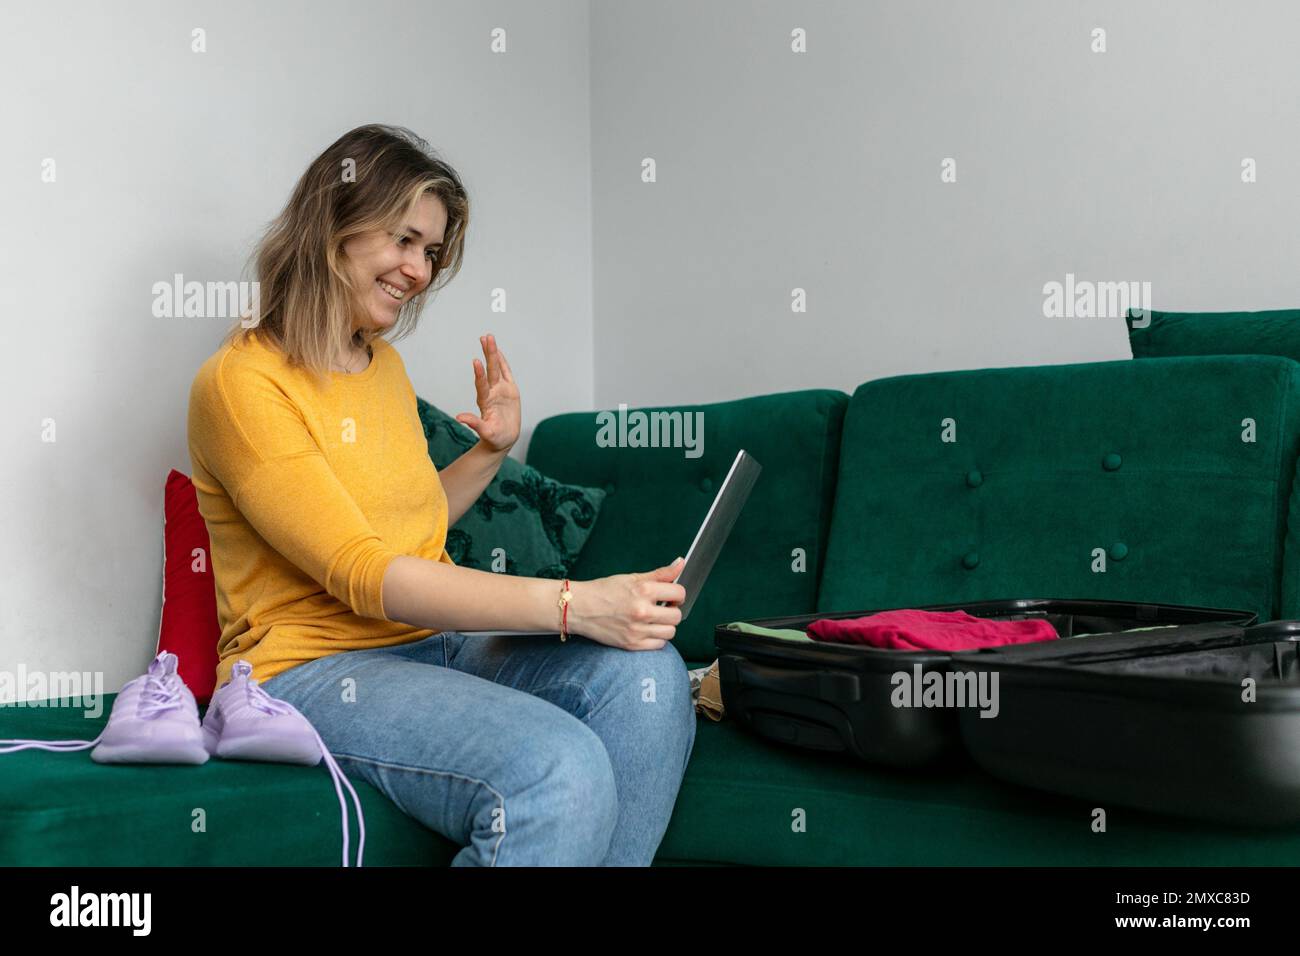 Seitenansicht einer lächelnden jungen Frau, die auf einem grünen Sofa sitzt, auf den Bildschirm des Tablets schaut, mit der Hand winkt, Videoanrufe führt. Stockfoto